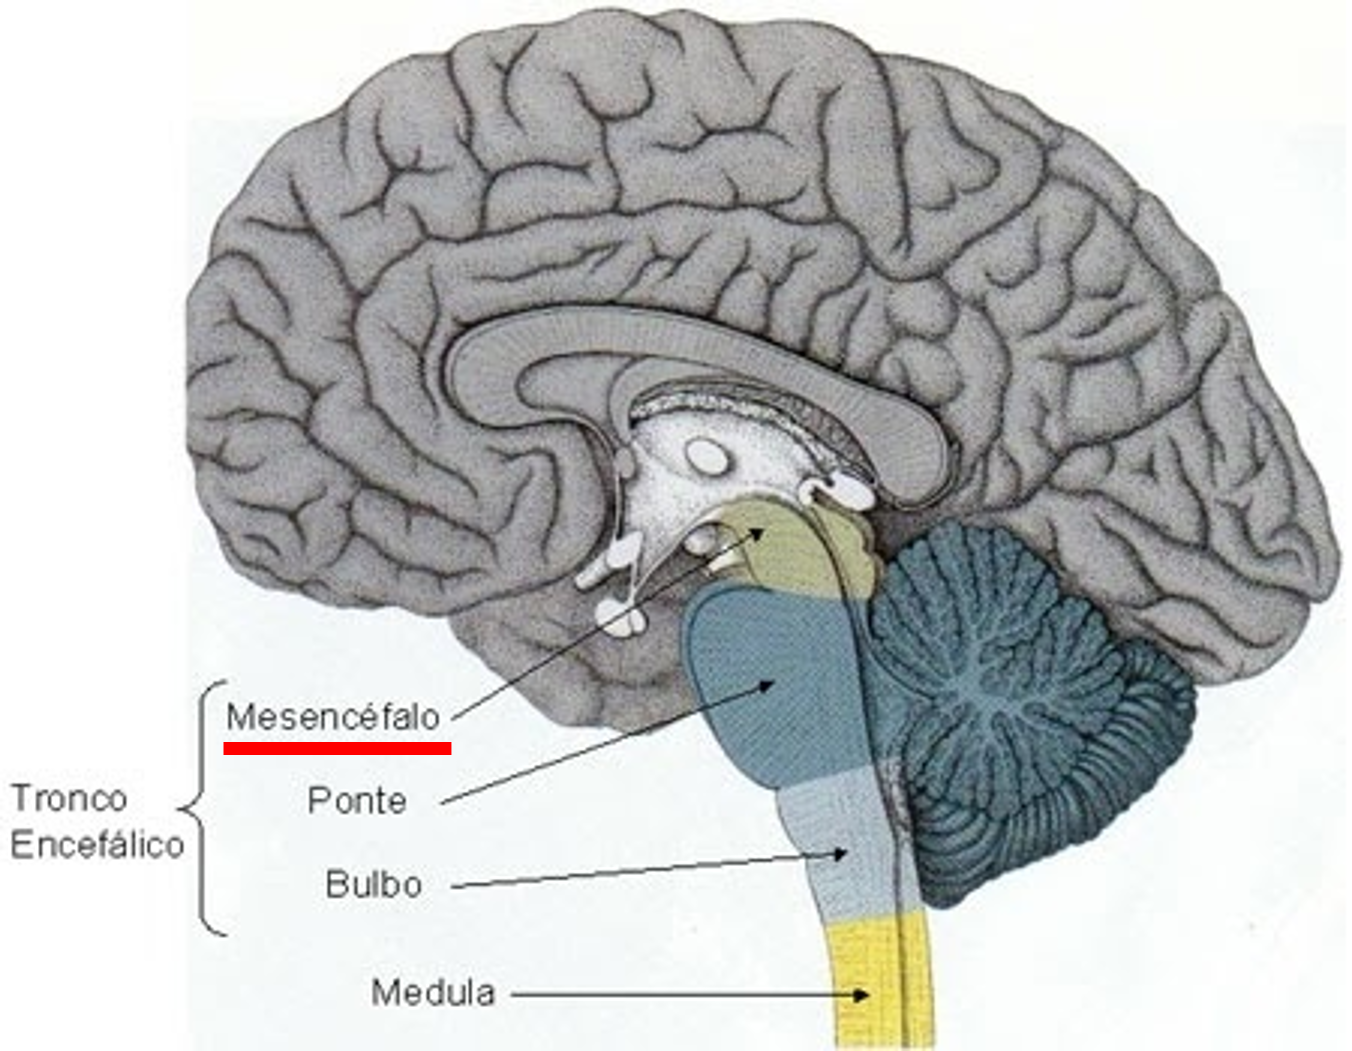 O Cerebro Esta Apoiado No Tronco Encefalico - ENSINO